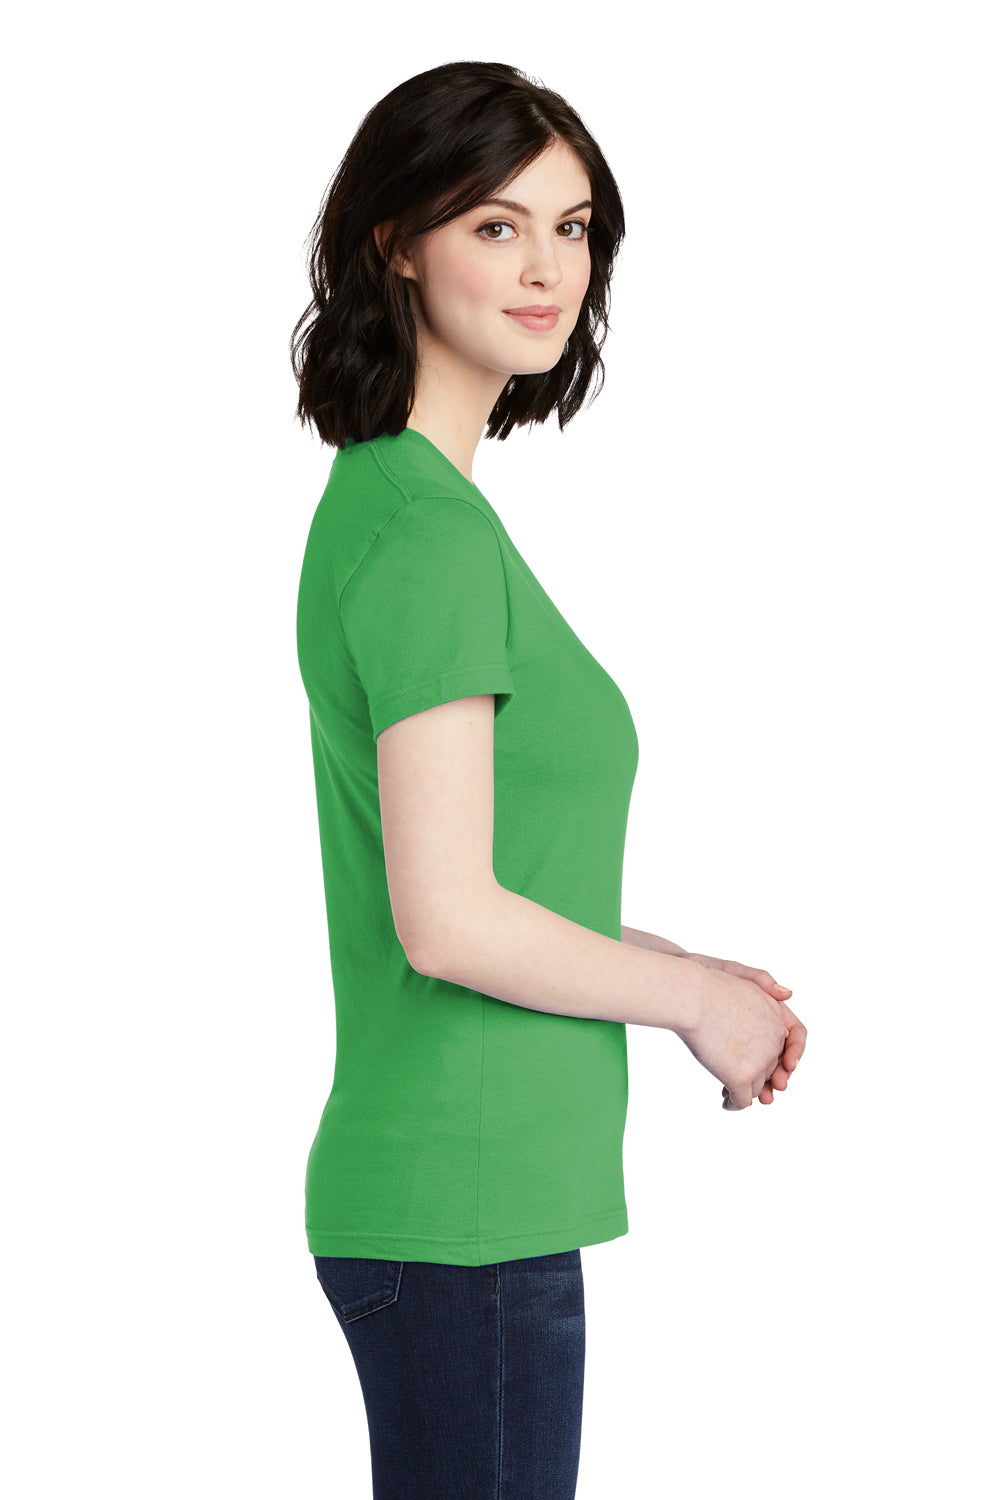 American Apparel 2102W Womens Fine Jersey Short Sleeve Crewneck T-Shirt Grass Green Side